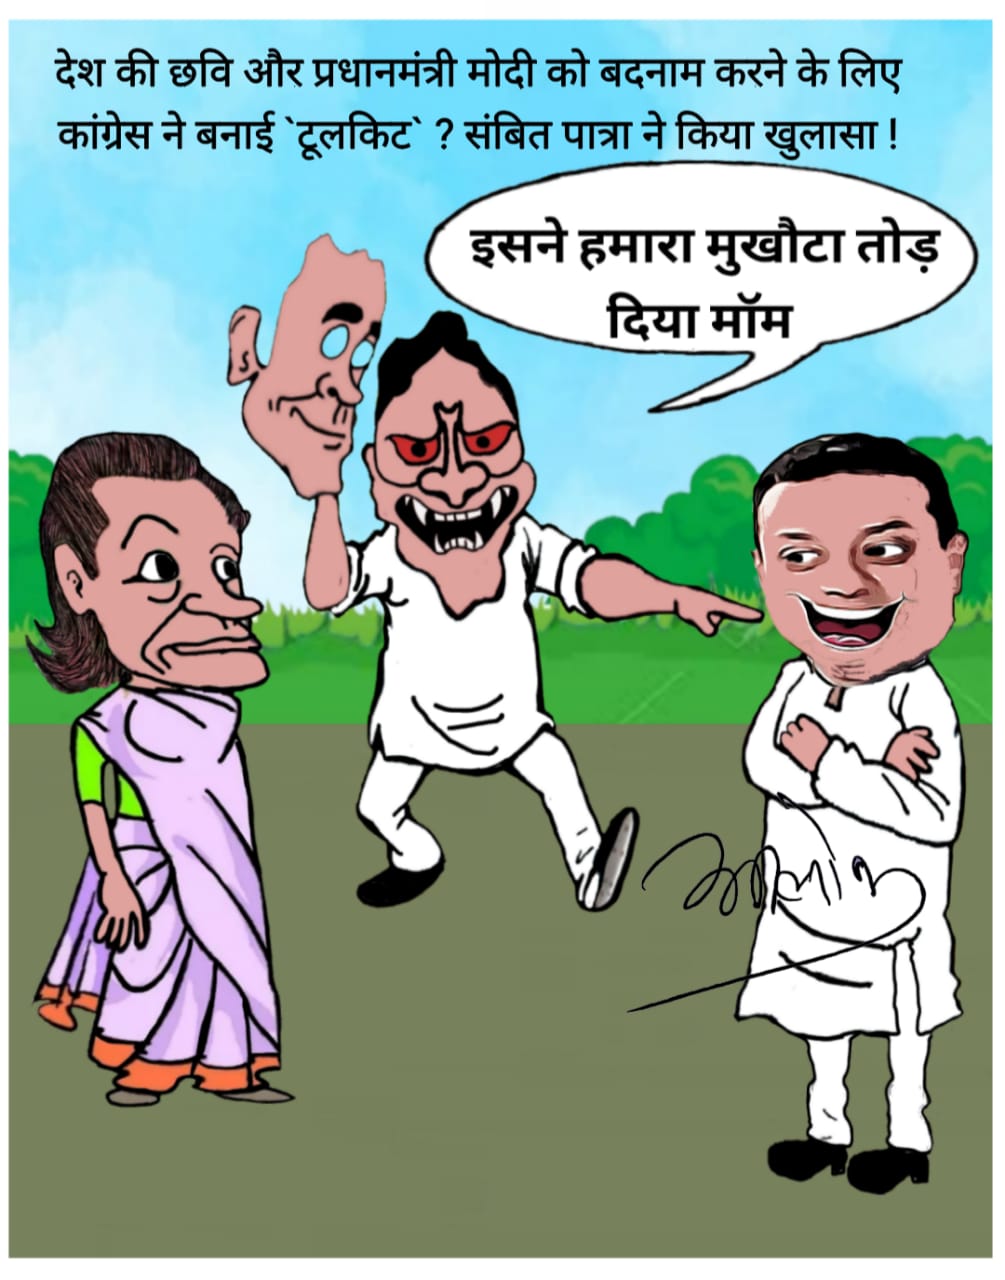 BJP Chhattisgarh on Twitter: 